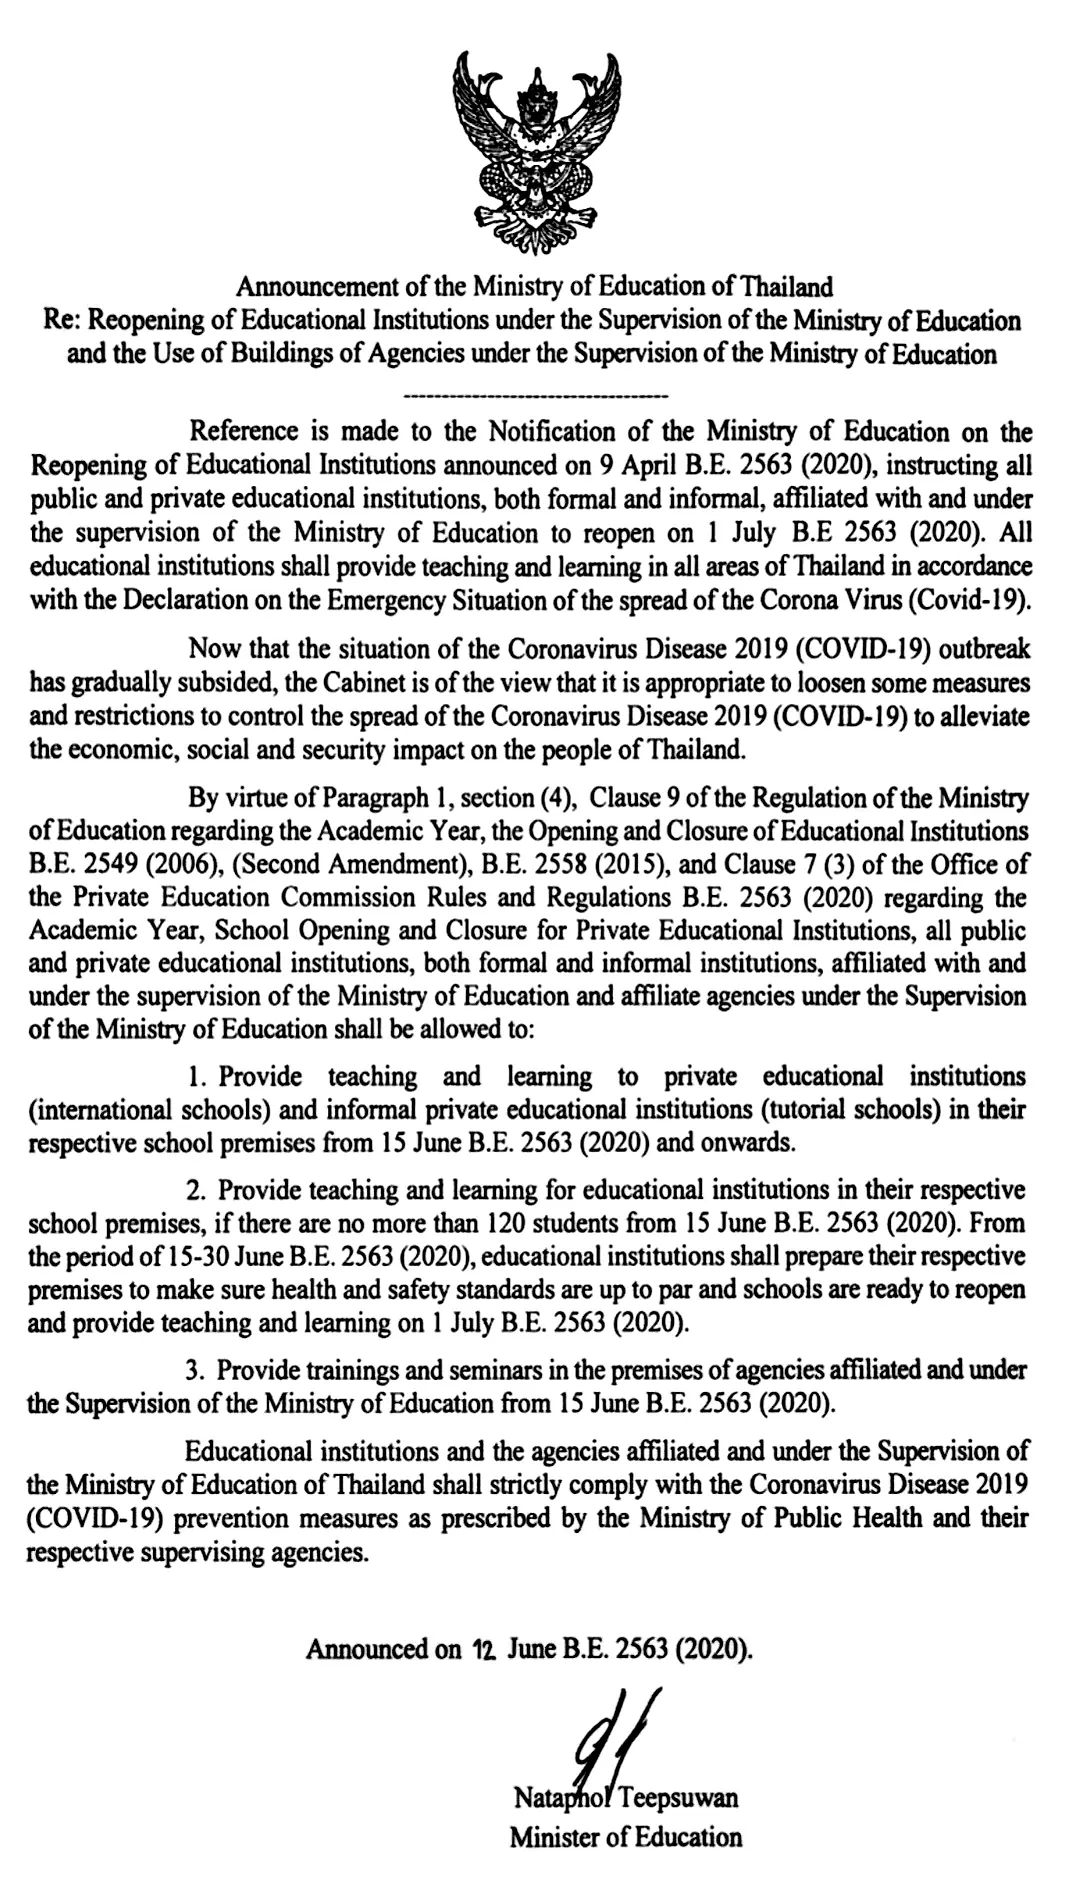 รมว.ศธ ลงนาม ประกาศกระทรวงฯ 'การเปิดเรียนของสถานศึกษา' โรงเรียนนานาชาติ เปิด 15 มิ.ย. โรงเรียนทั่วไปเปิดเรียน 1 กรกฎาคม 2563